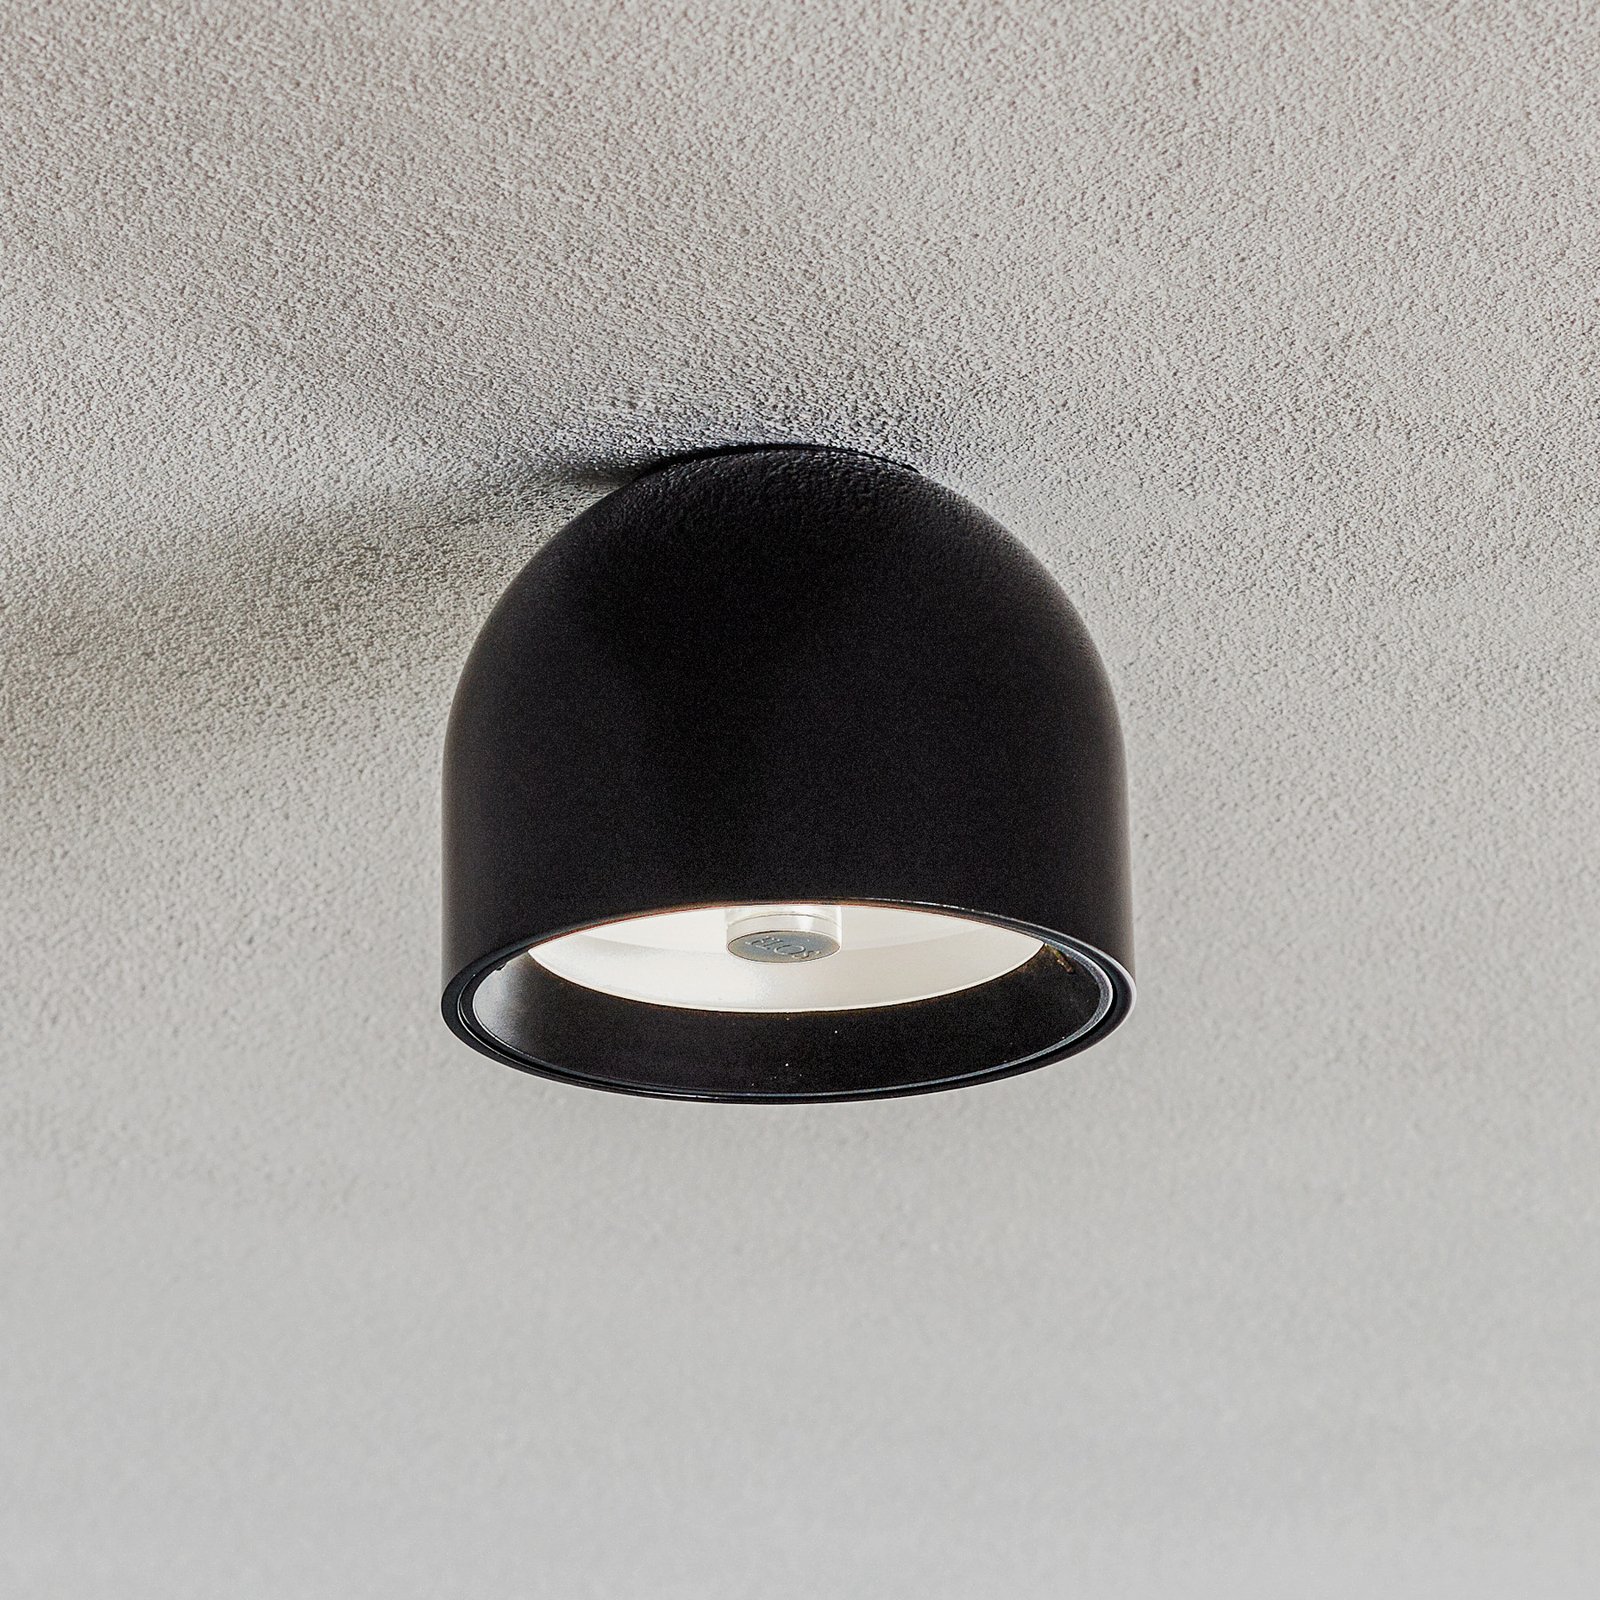 Atractiva lámpara de techo WAN en color negro